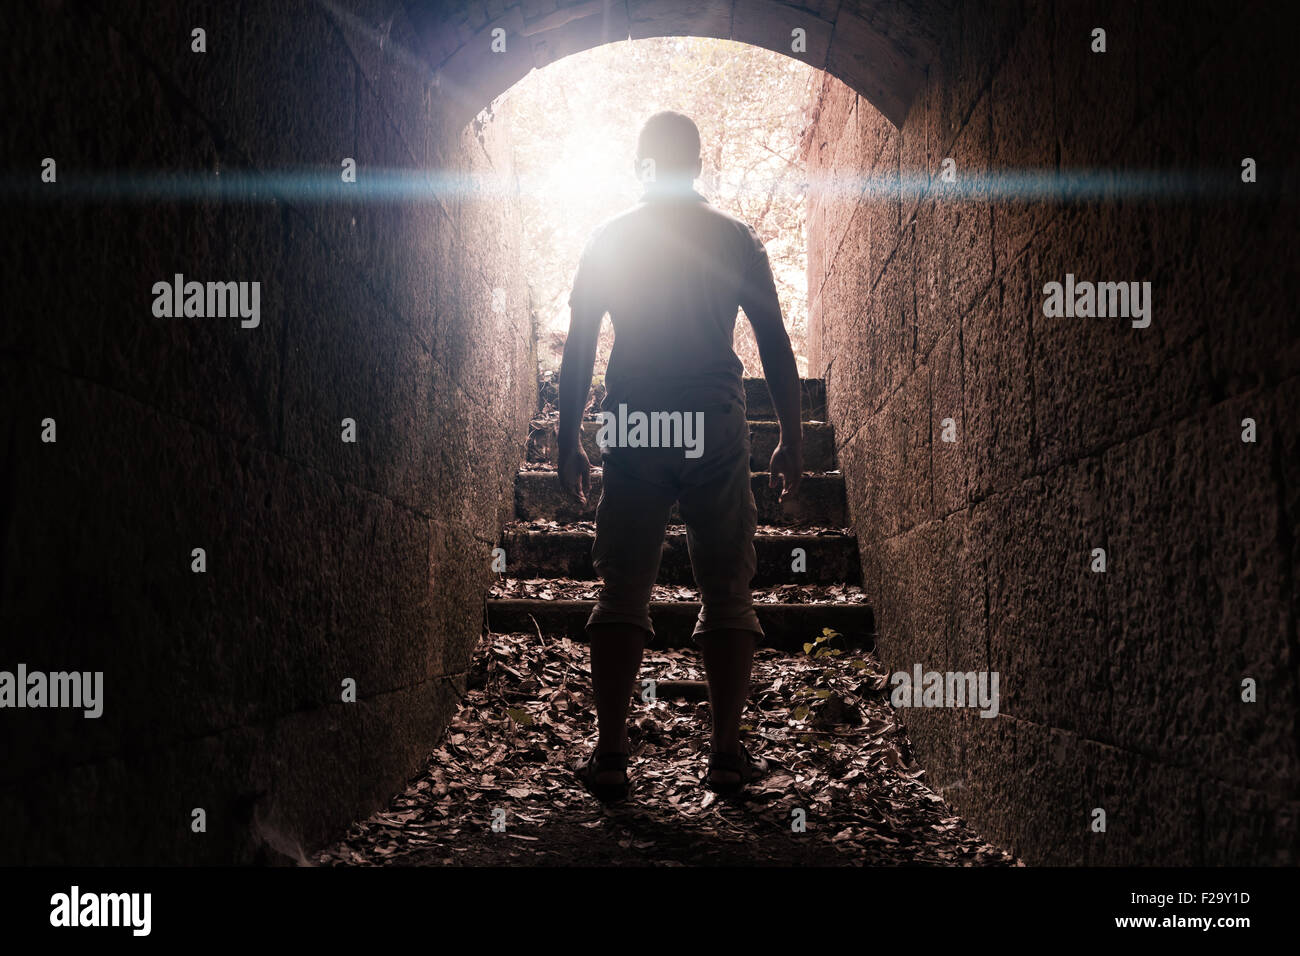 Jeune homme est en pierre sombre tunnel avec extrémité rougeoyante, photo aux teintes chaleureuses avec lentille effet glow Banque D'Images